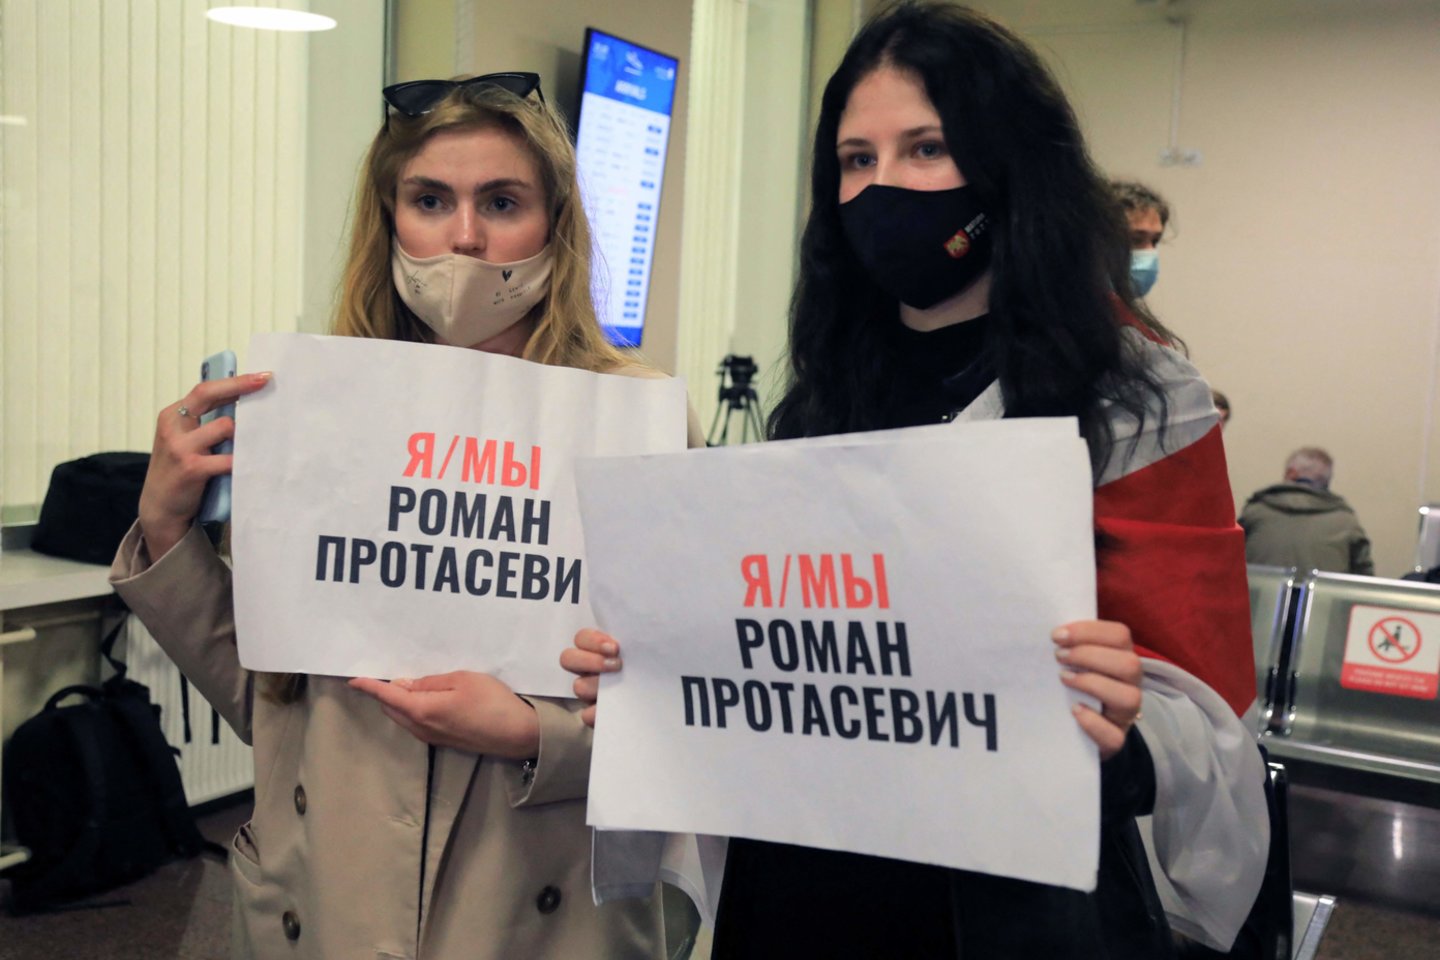  Teisių gynėjai Minske sulaikytą R. Protasevičių pripažino politiniu kaliniu.<br> AFP/Scanpix nuotr.